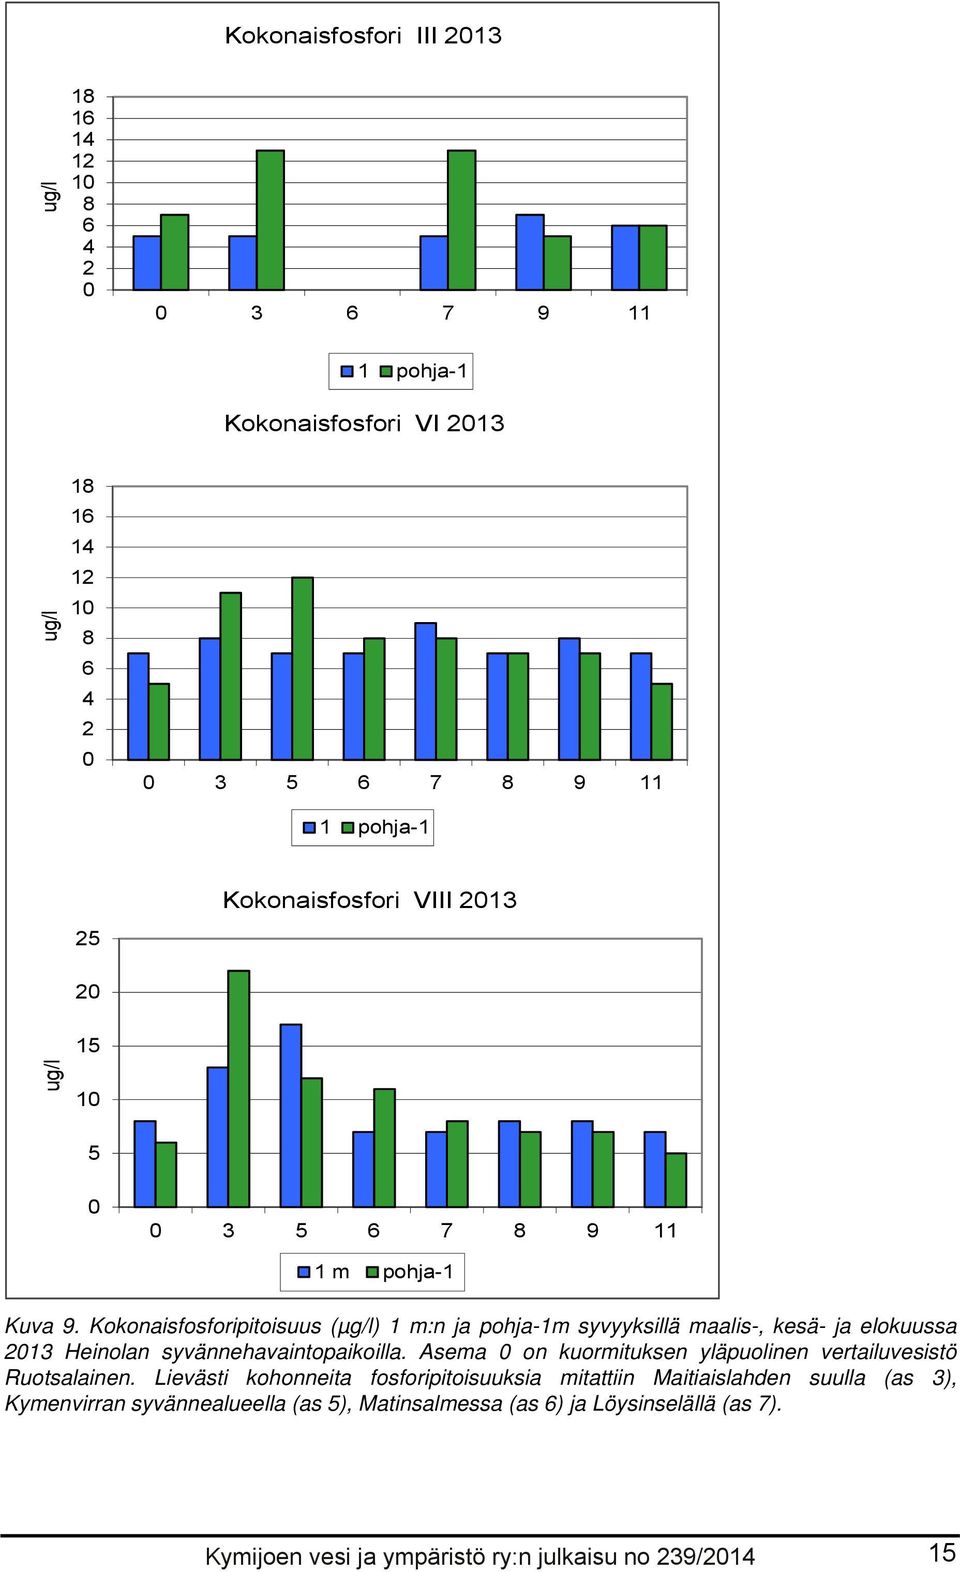 Kokonaisfosforipitoisuus (µg/l) 1 m:n ja pohja-1m syvyyksillä maalis-, kesä- ja elokuussa 213 Heinolan syvännehavaintopaikoilla.